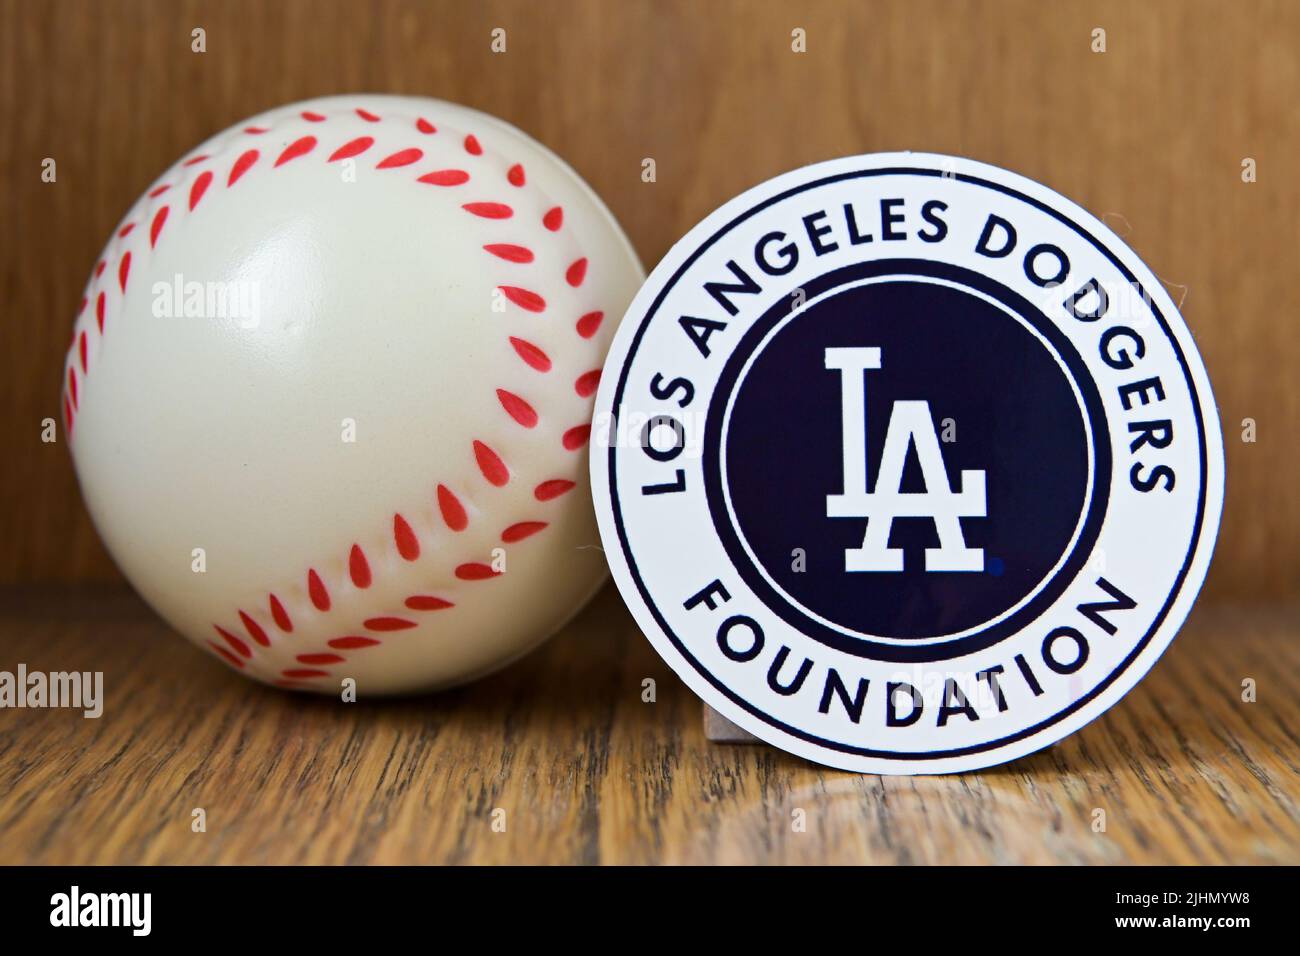 19 luglio 2022, Cooperstown, New York. L'emblema del Los Angeles Dodgers baseball club e un baseball. Foto Stock